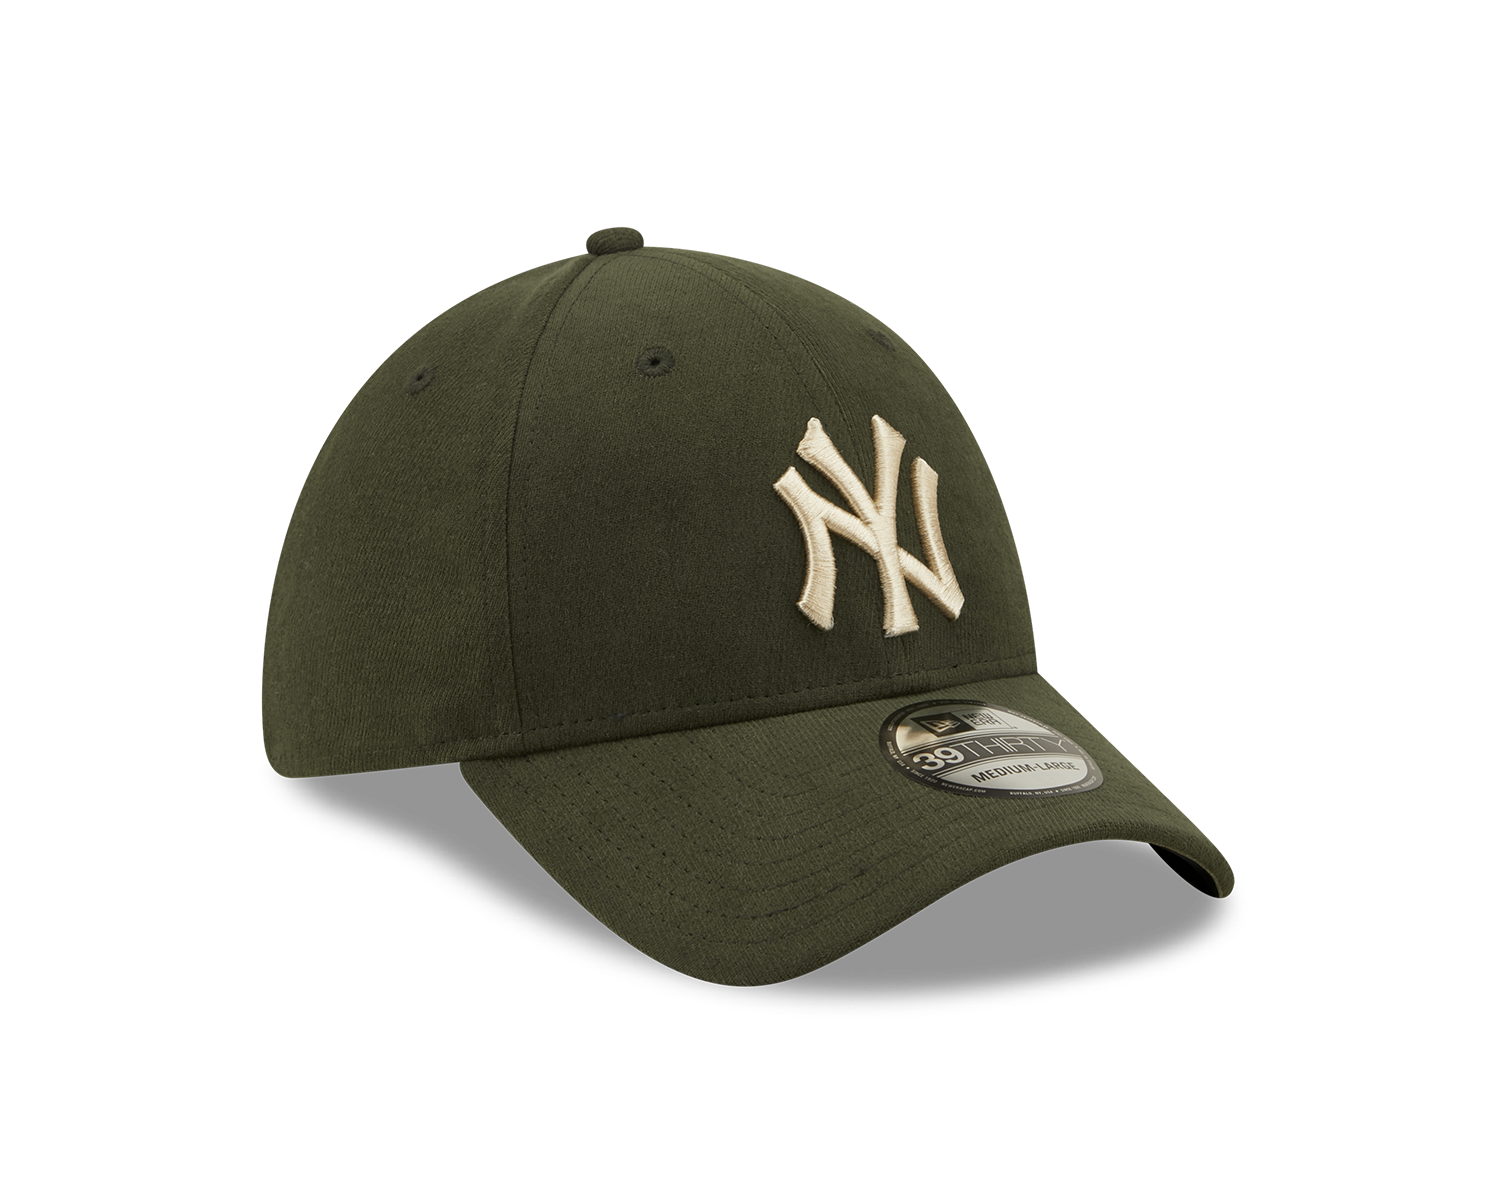 Comfort 39Thirty - New York Yankees New Olive/Stone